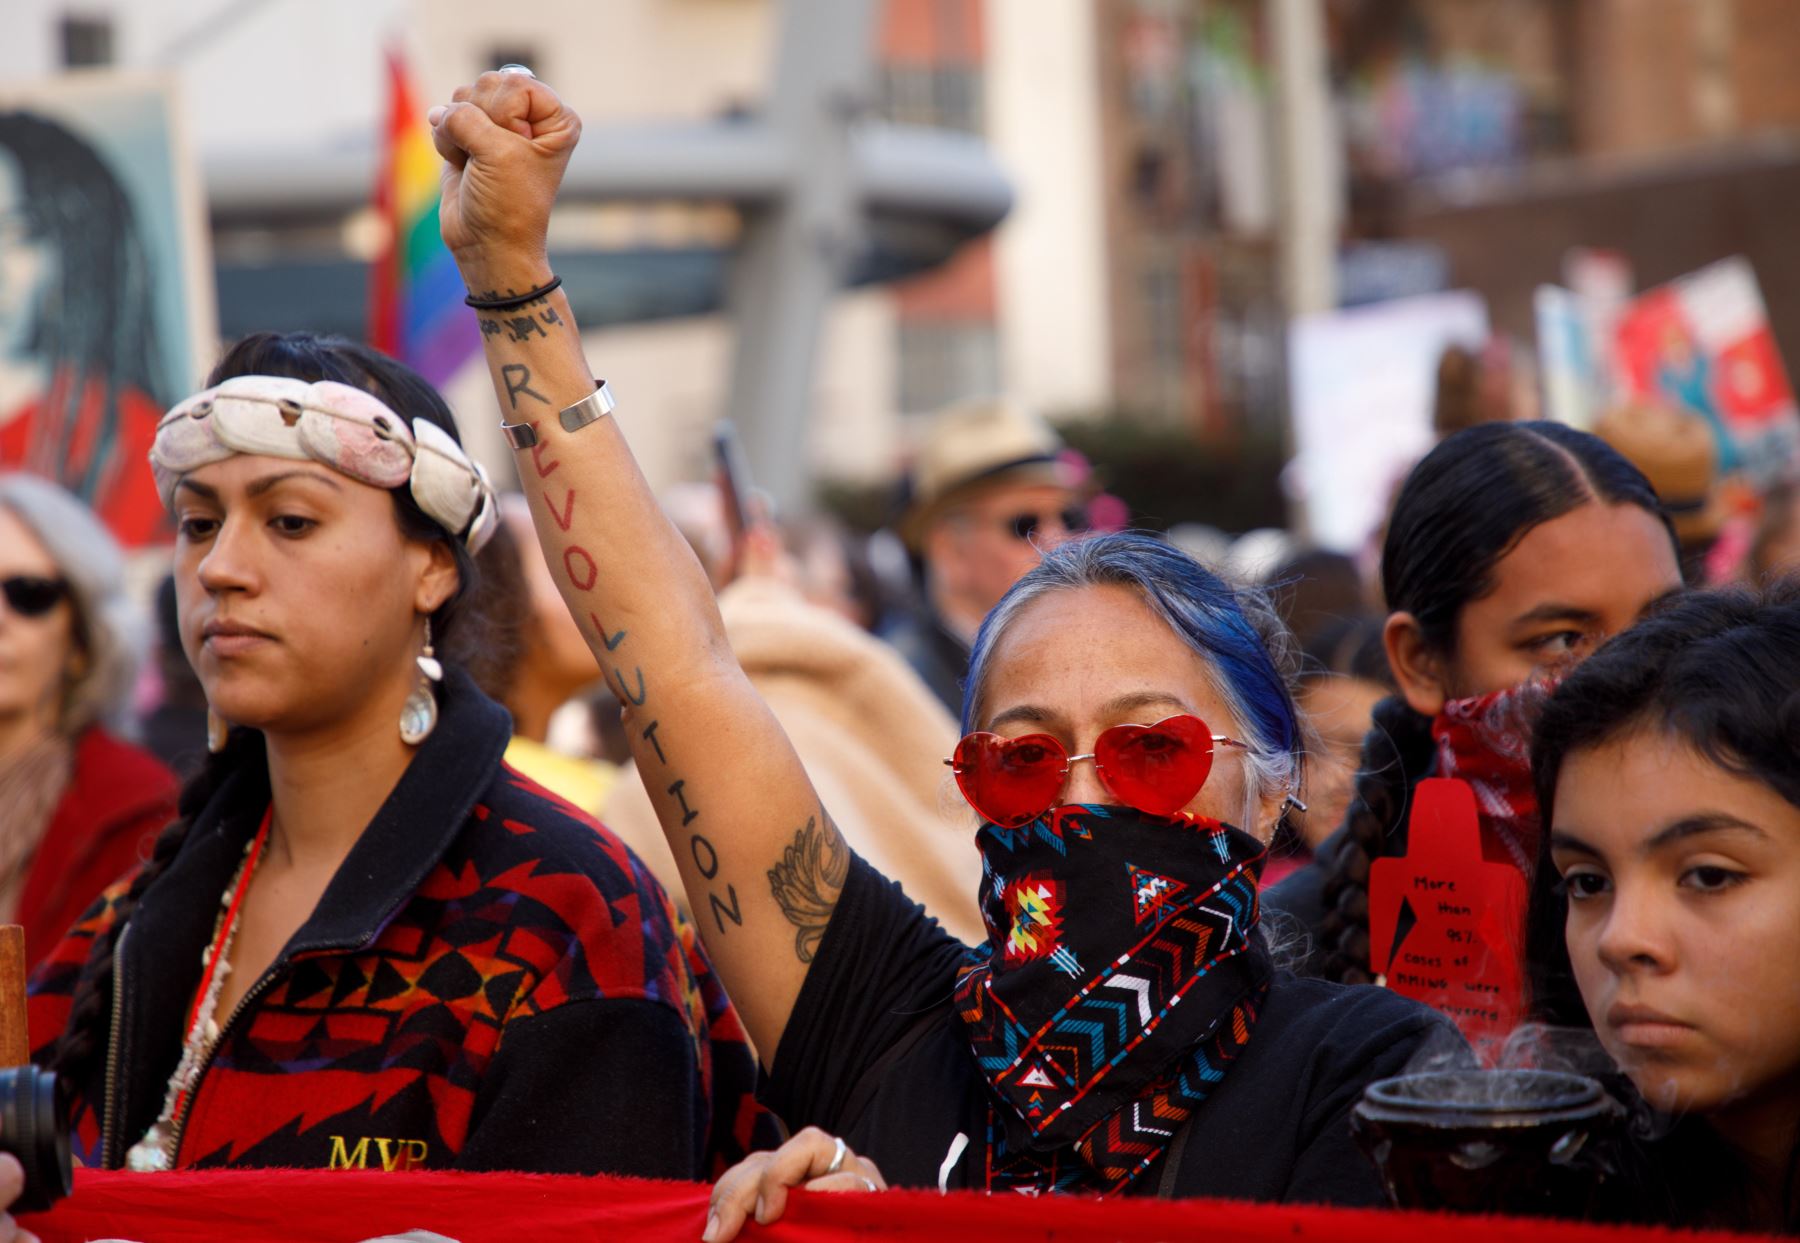 Los Ángeles (Estados Unidos). Miles de personas participaron en la Tercera Marcha Anual de Mujeres en Los Ángeles, California, EE. UU. La organización ha tomado las calles para protestar contra las políticas de la administración Trump. Foto: EFE